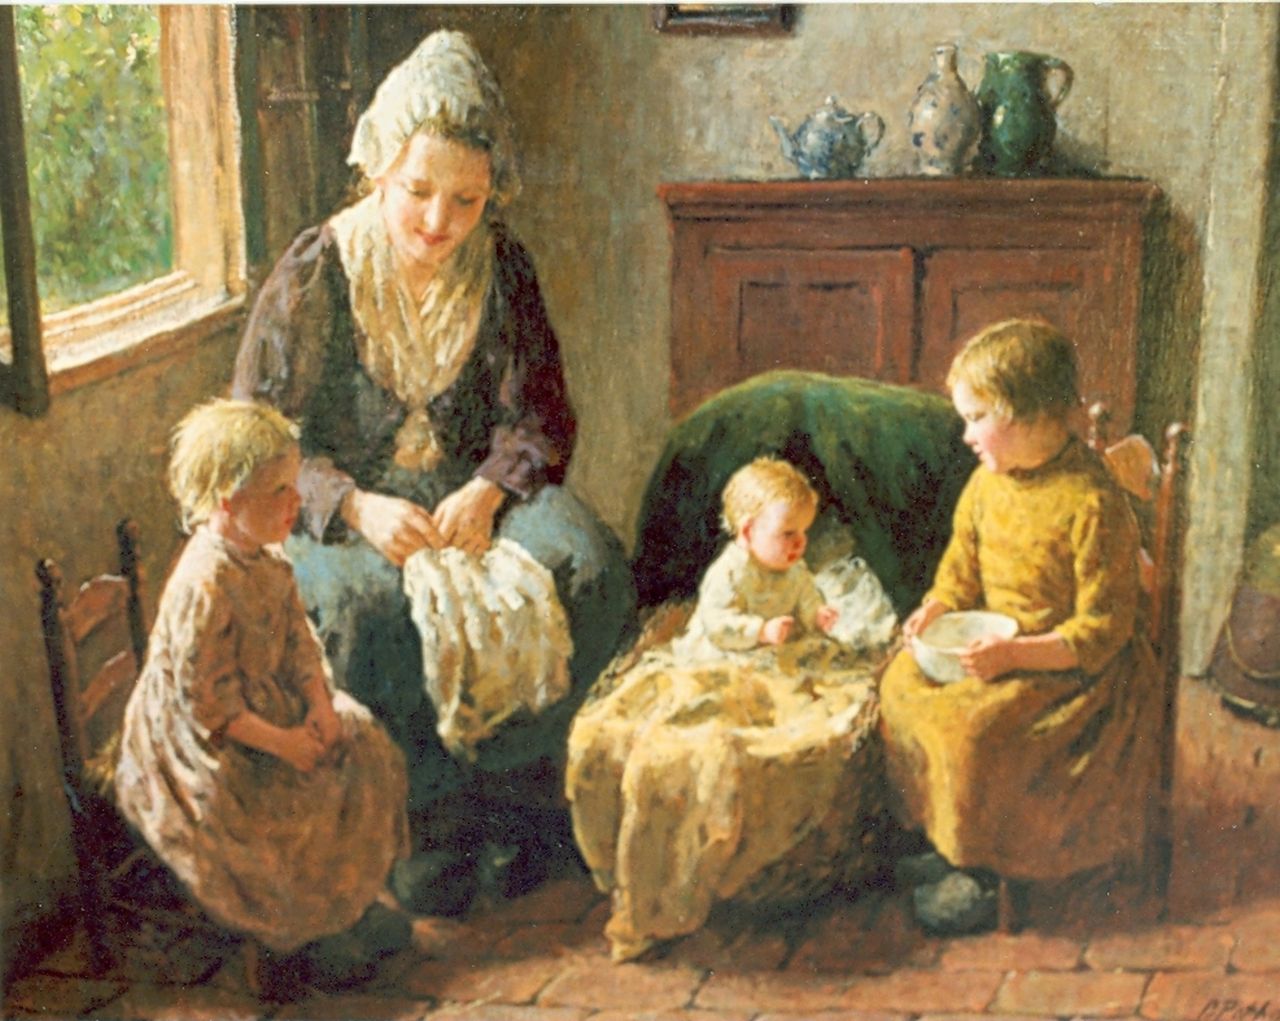 Pothast B.J.C.  | 'Bernard' Jean Corneille Pothast, Moeder met kinderen, olieverf op doek 48,5 x 58,5 cm, gesigneerd rechtsonder